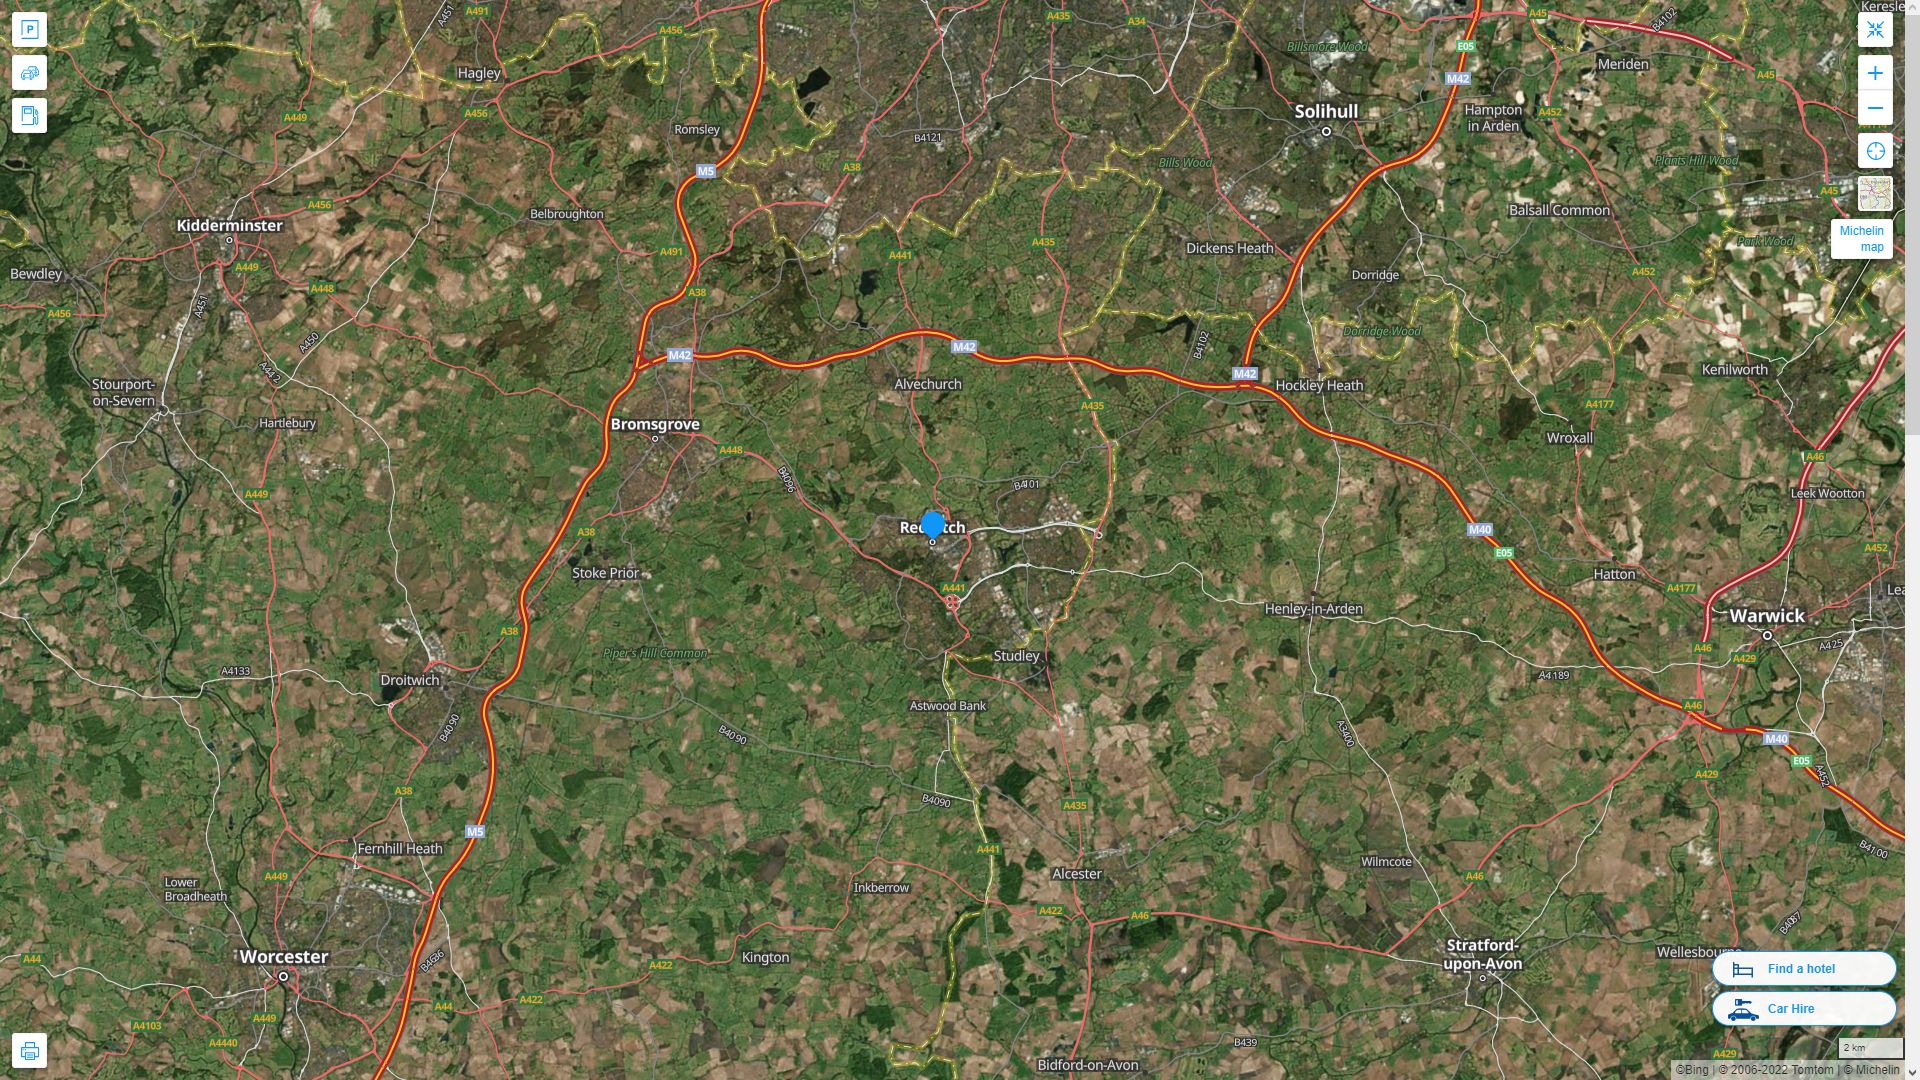 Redditch Royaume Uni Autoroute et carte routiere avec vue satellite